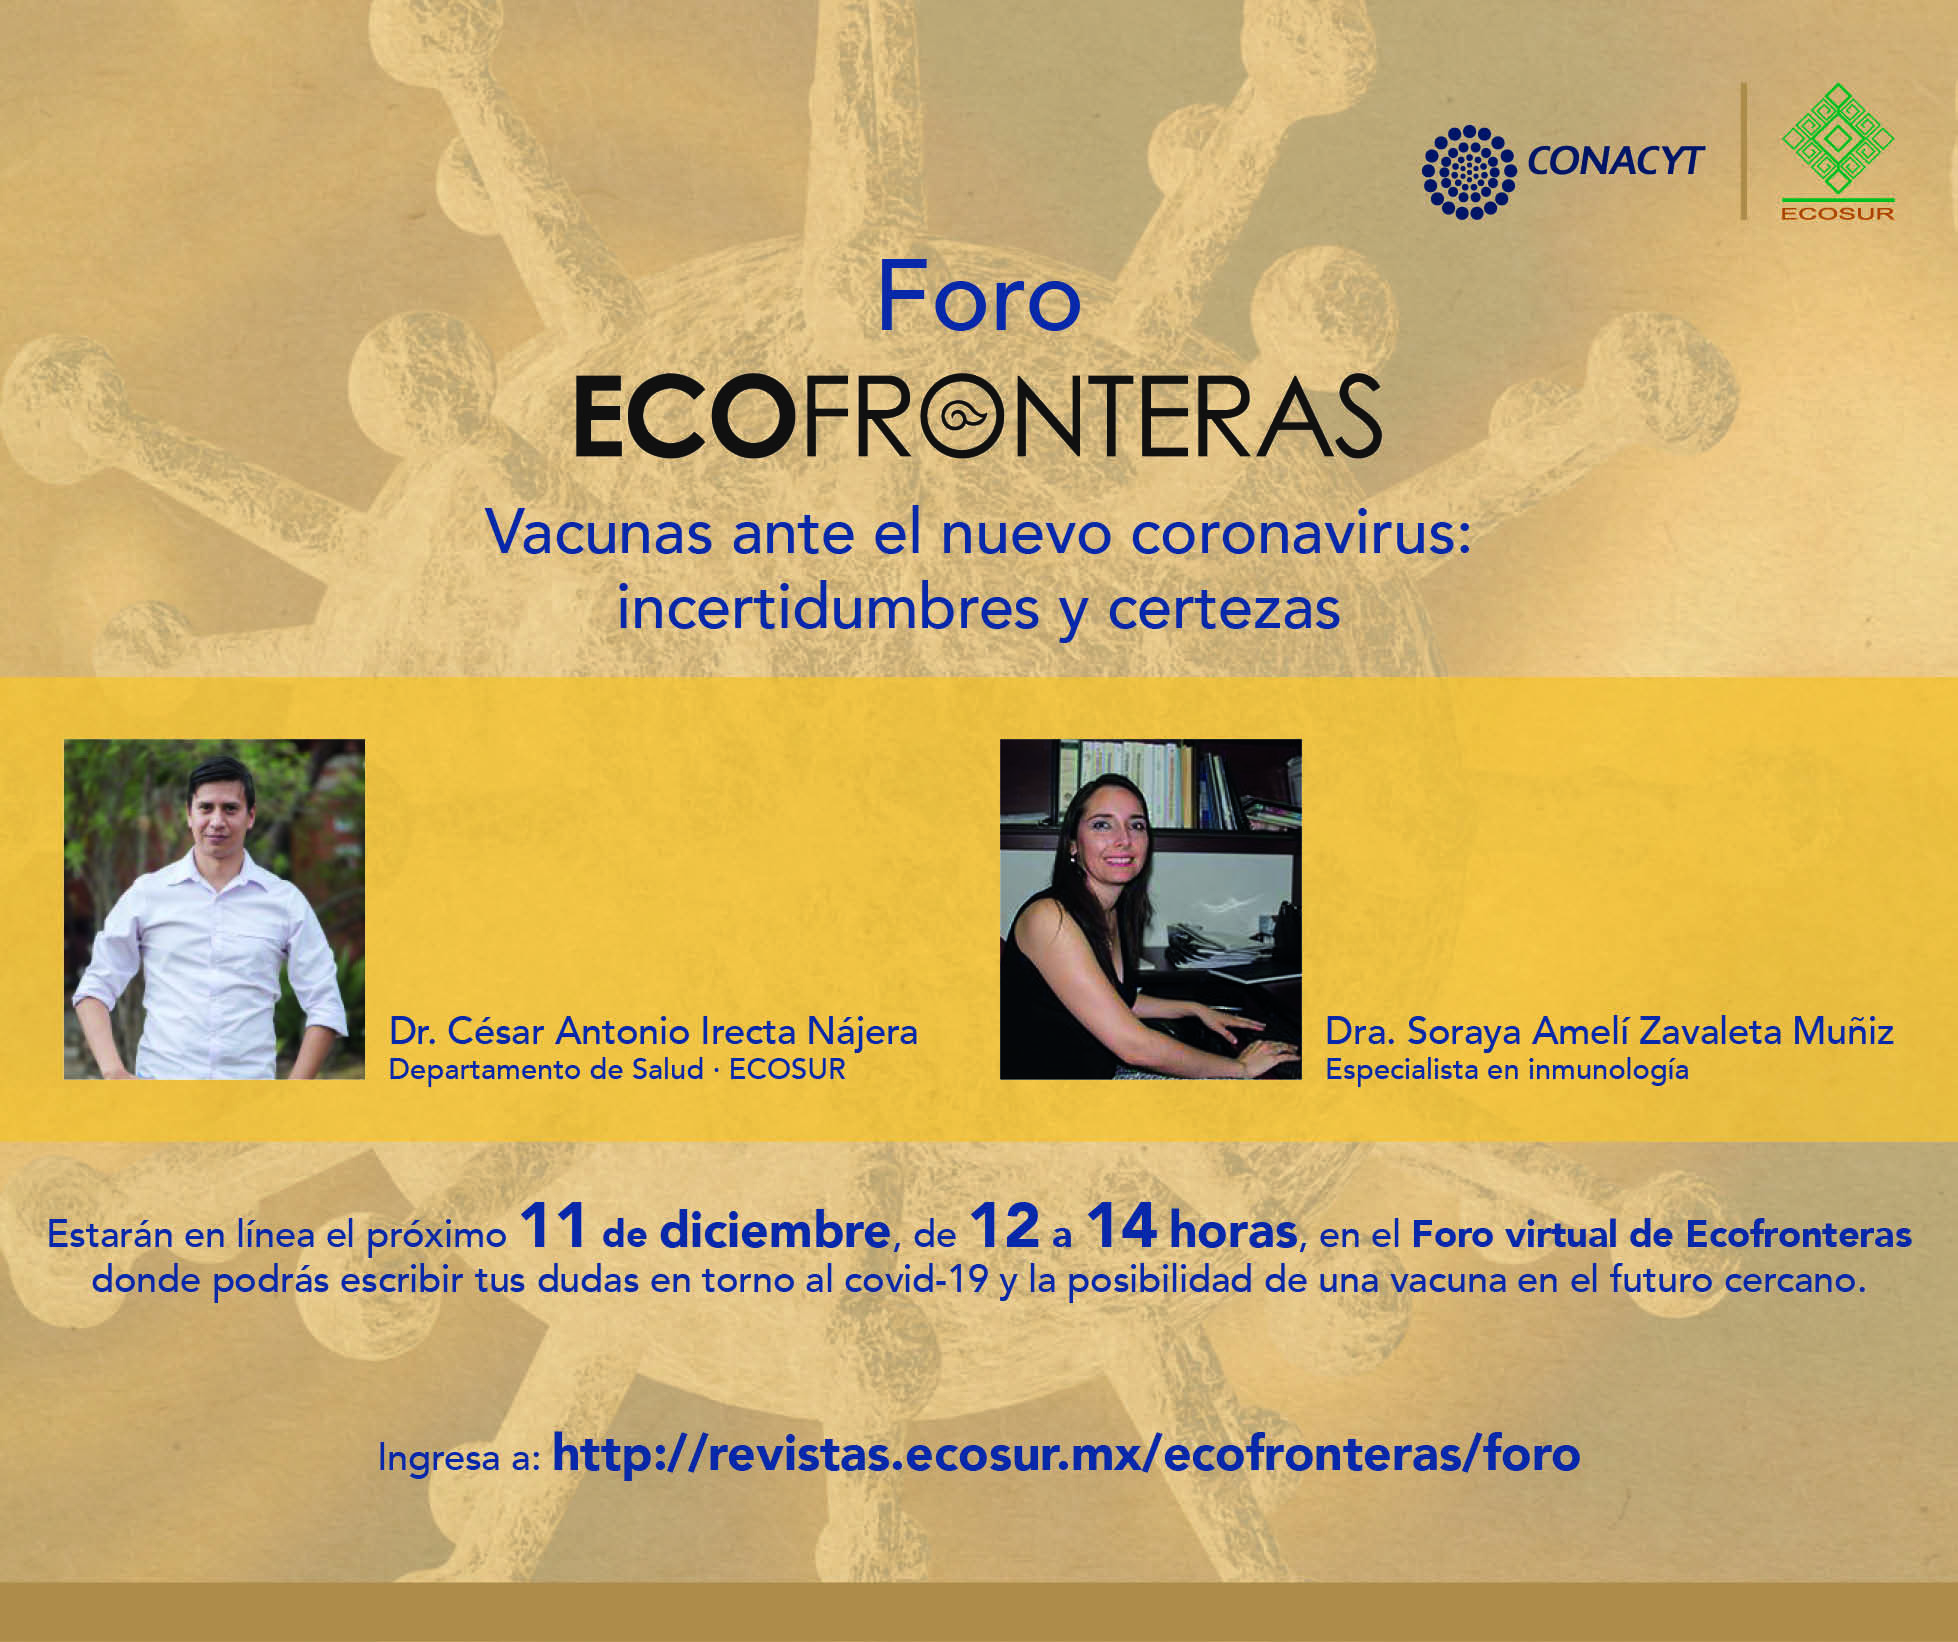 Foro ECOFRONTERAS “Vacunas ante el nuevo coronavirus: incertidumbres y certezas”